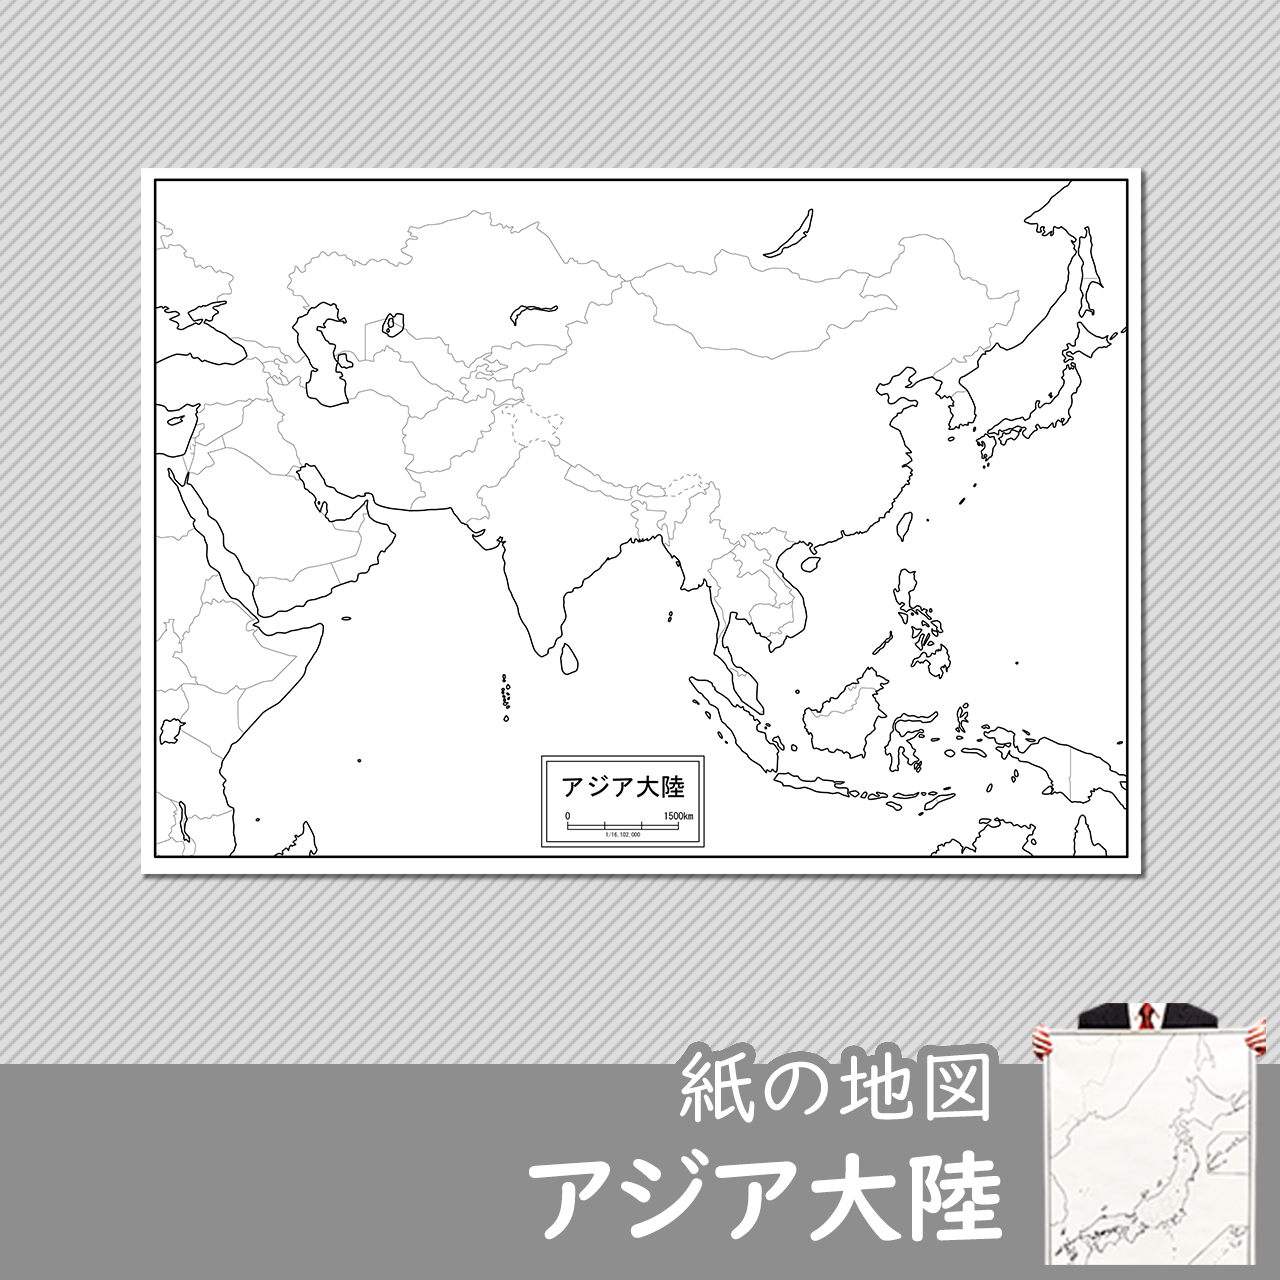 アジア大陸の紙の白地図のサムネイル